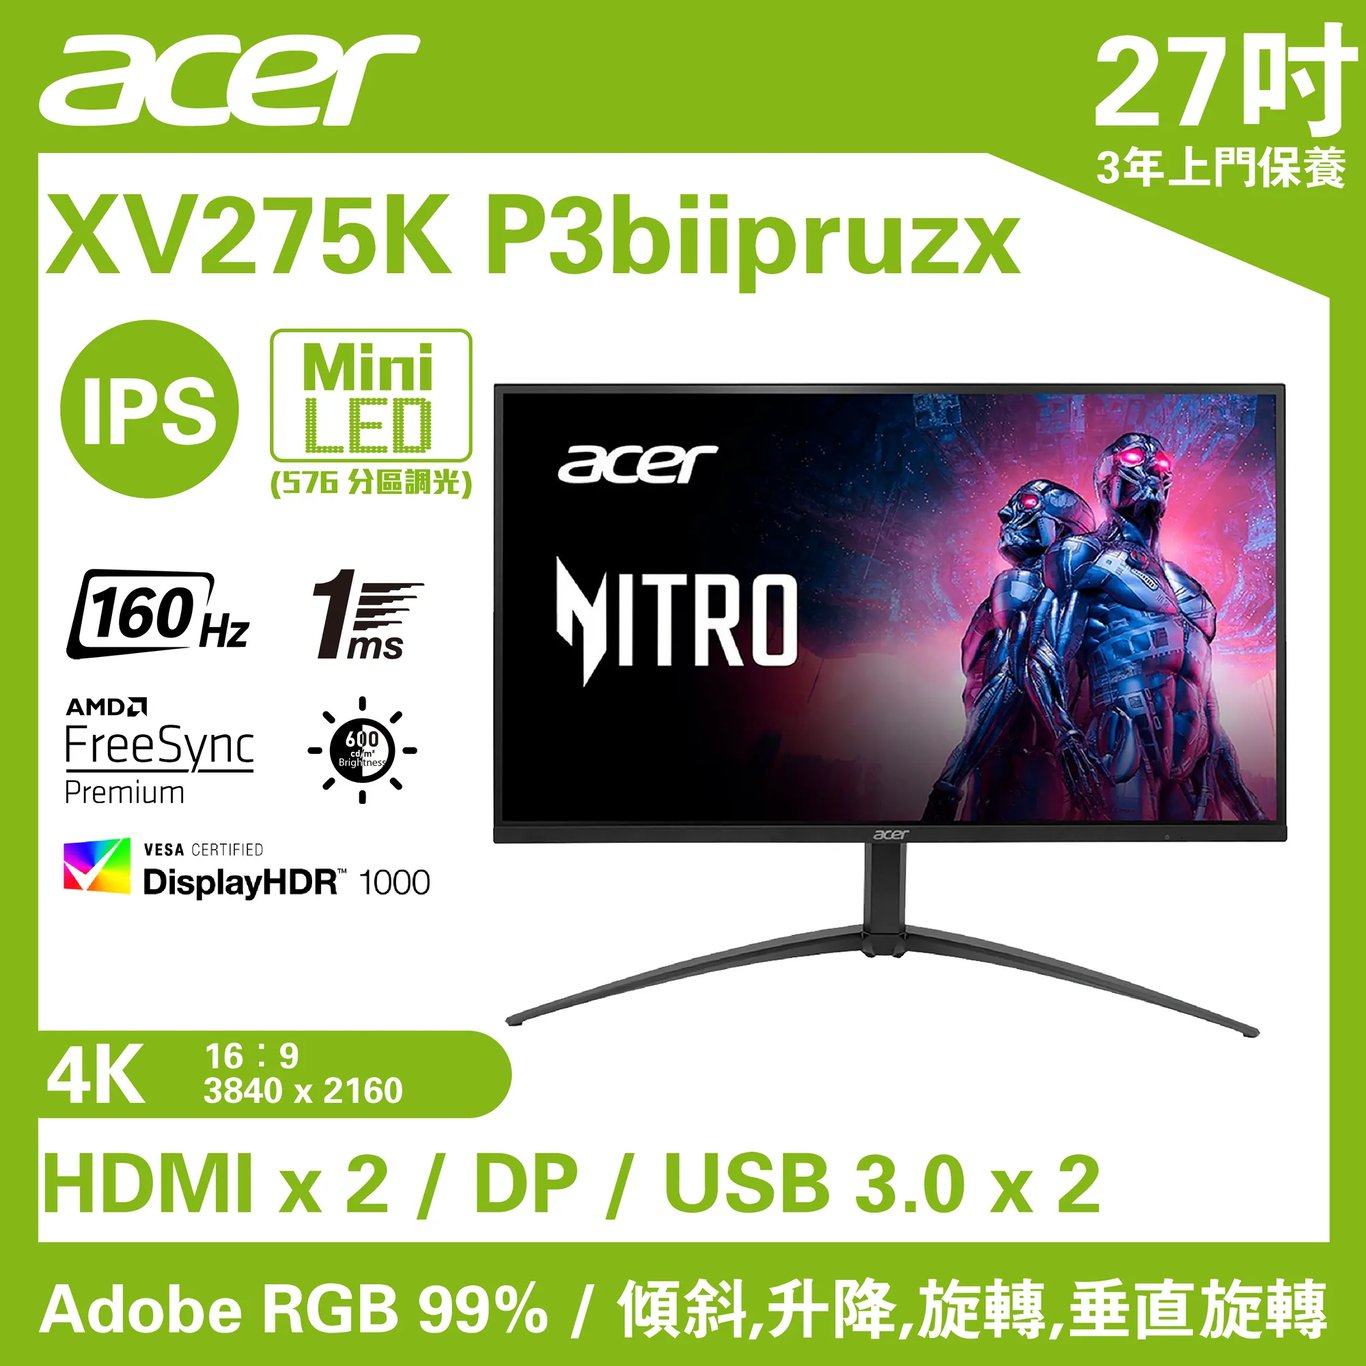 【限時優惠】Acer NITRO XV275K P3biipruzx 電競顯示器